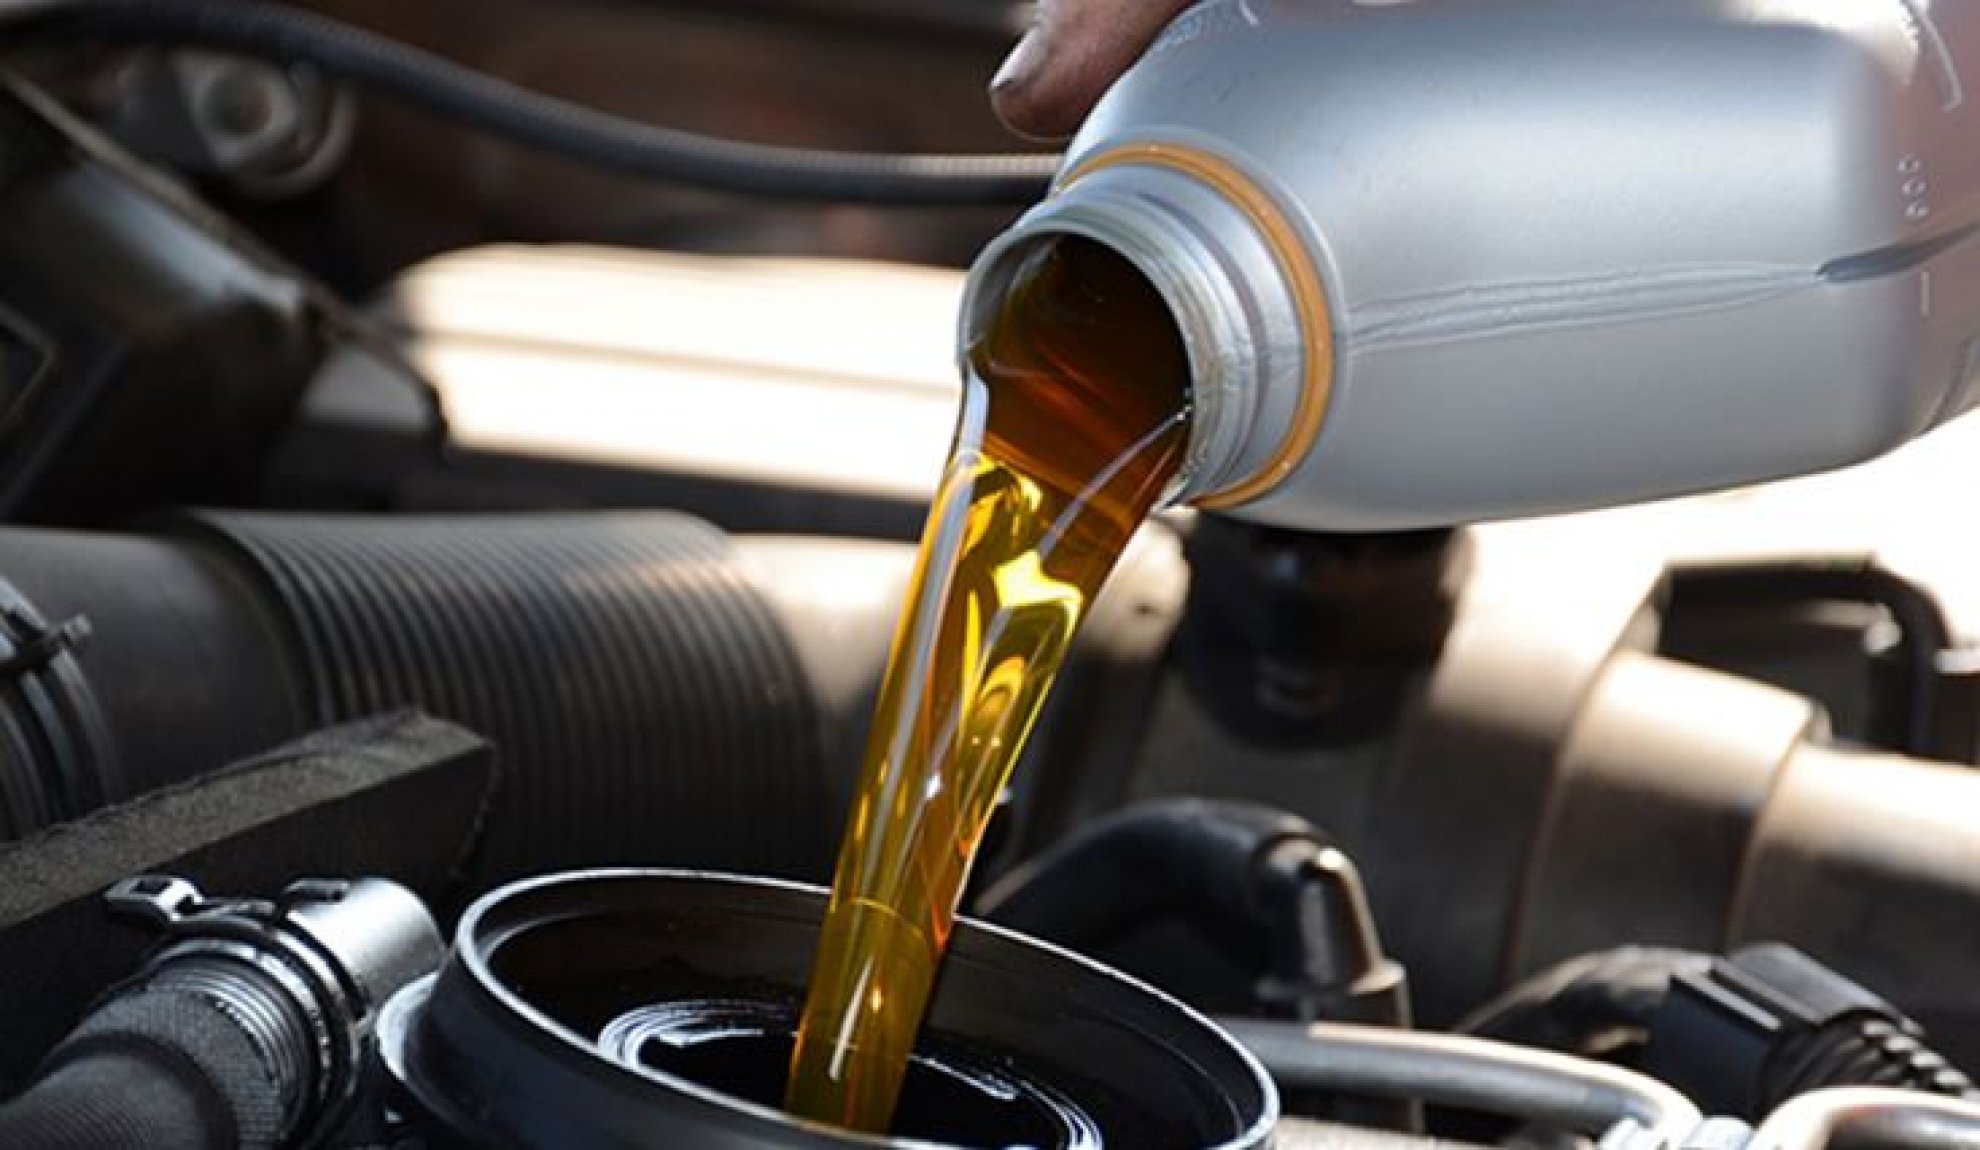 More information about "Motori sportivi: la scelta del giusto olio è fondamentale"